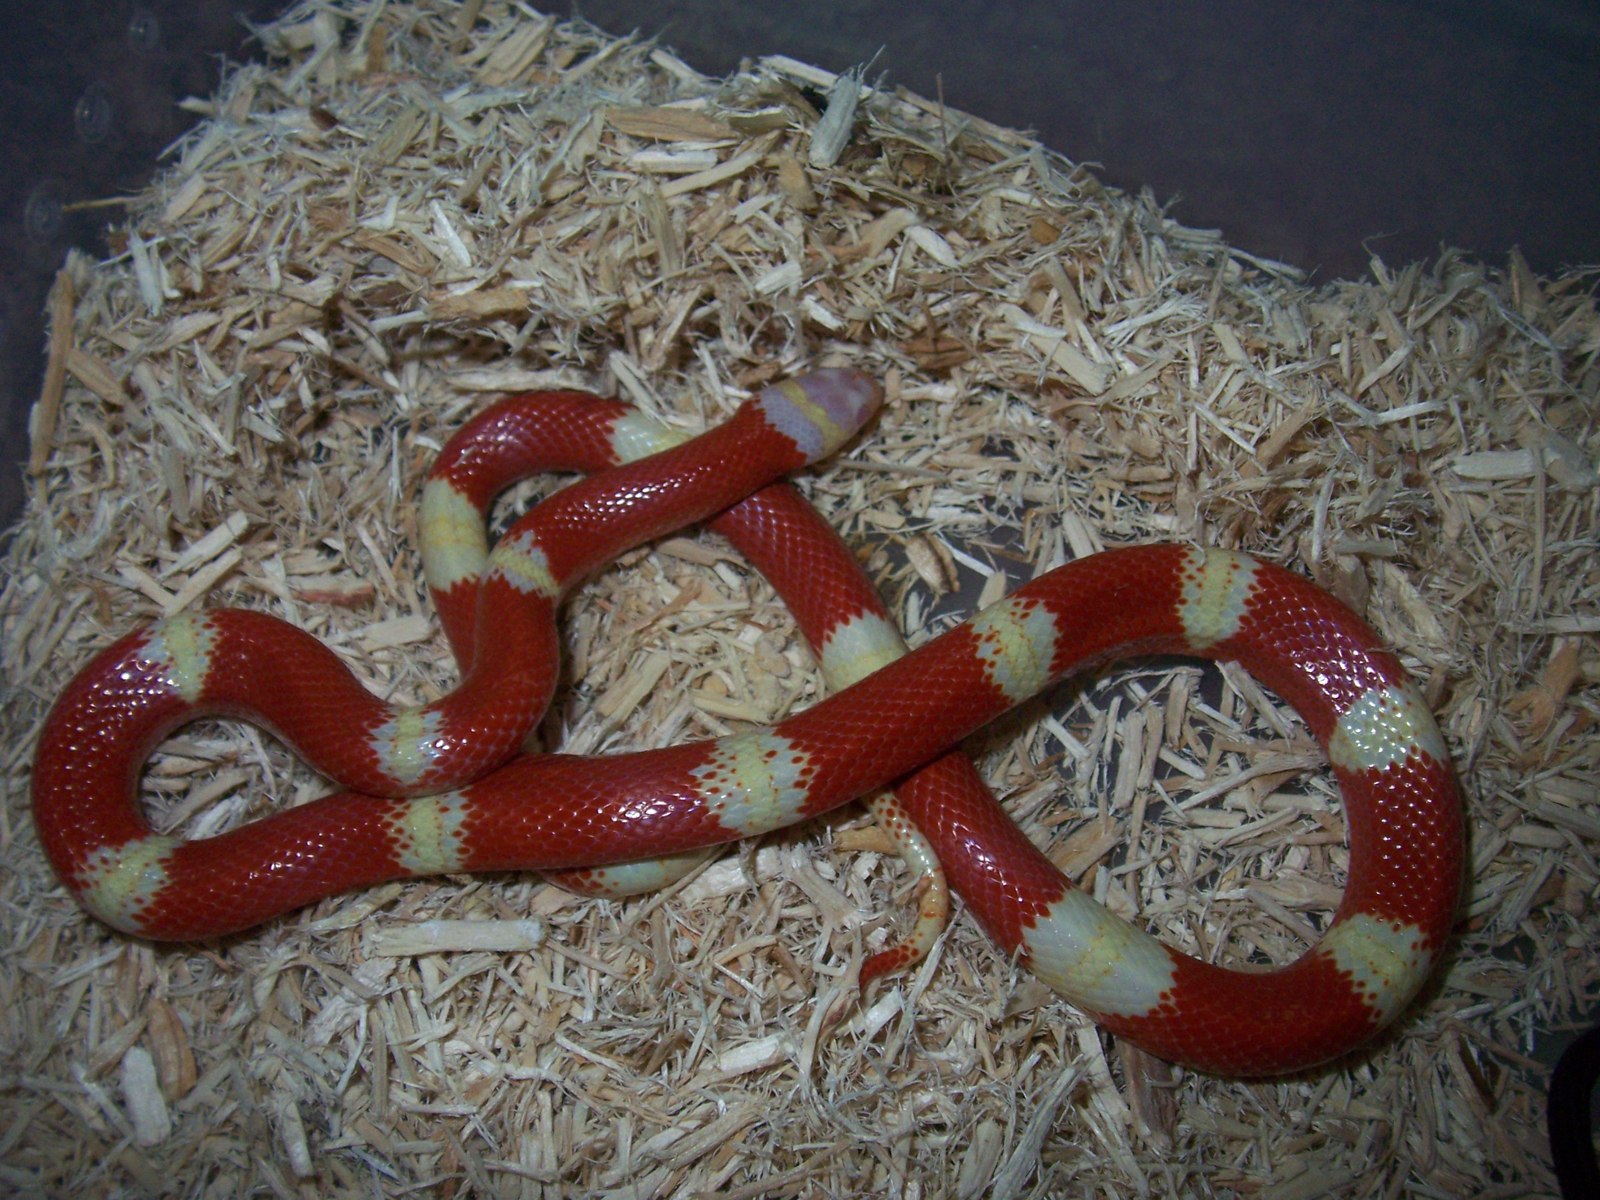 Змея аспидов 5